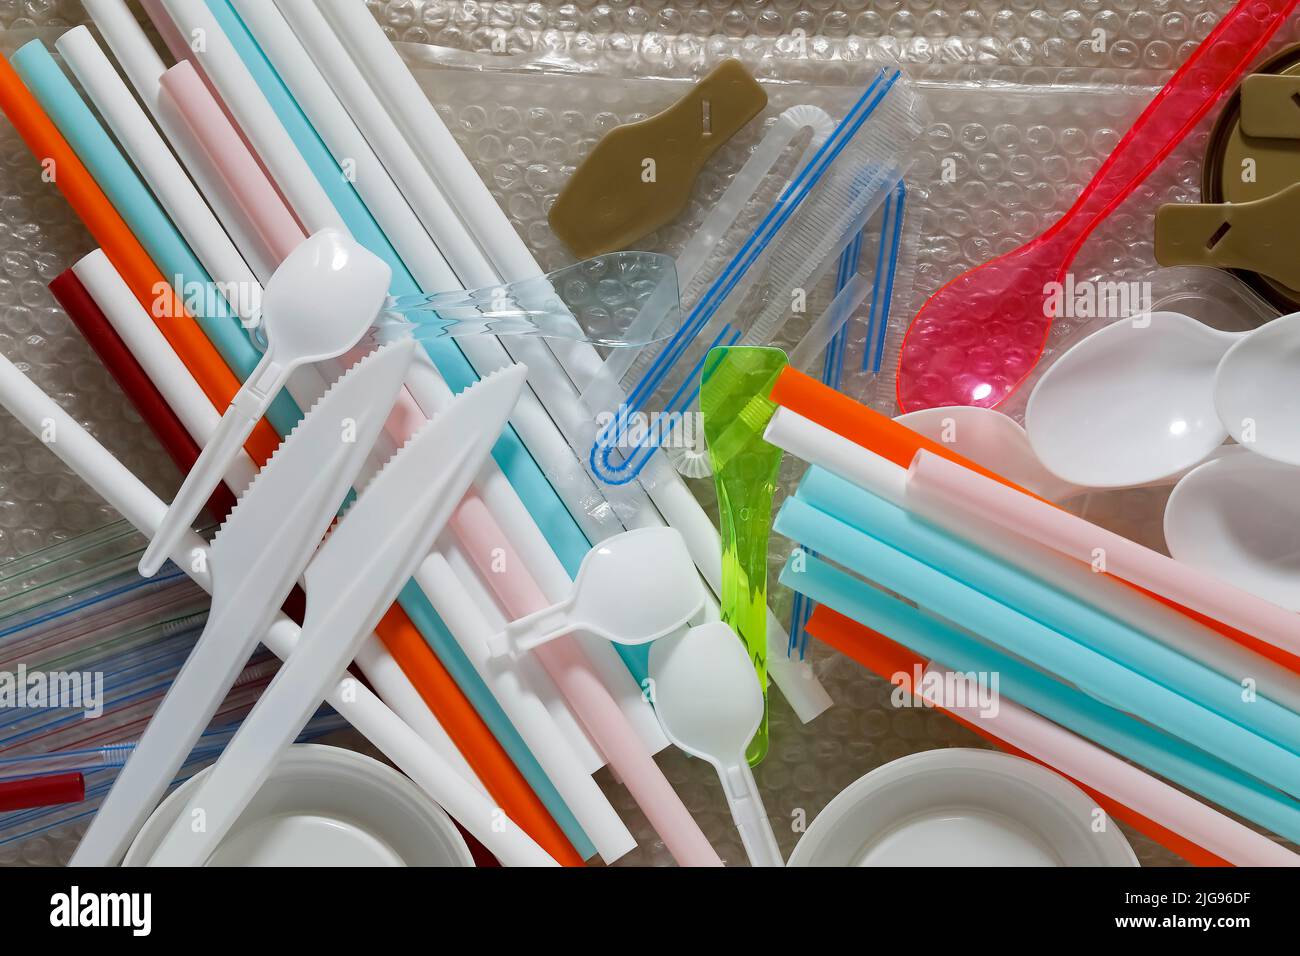 Los objetos plásticos desechables son fáciles y cómodos de usar, pero el material del que están hechos contamina gravemente el medio ambiente. Foto de stock